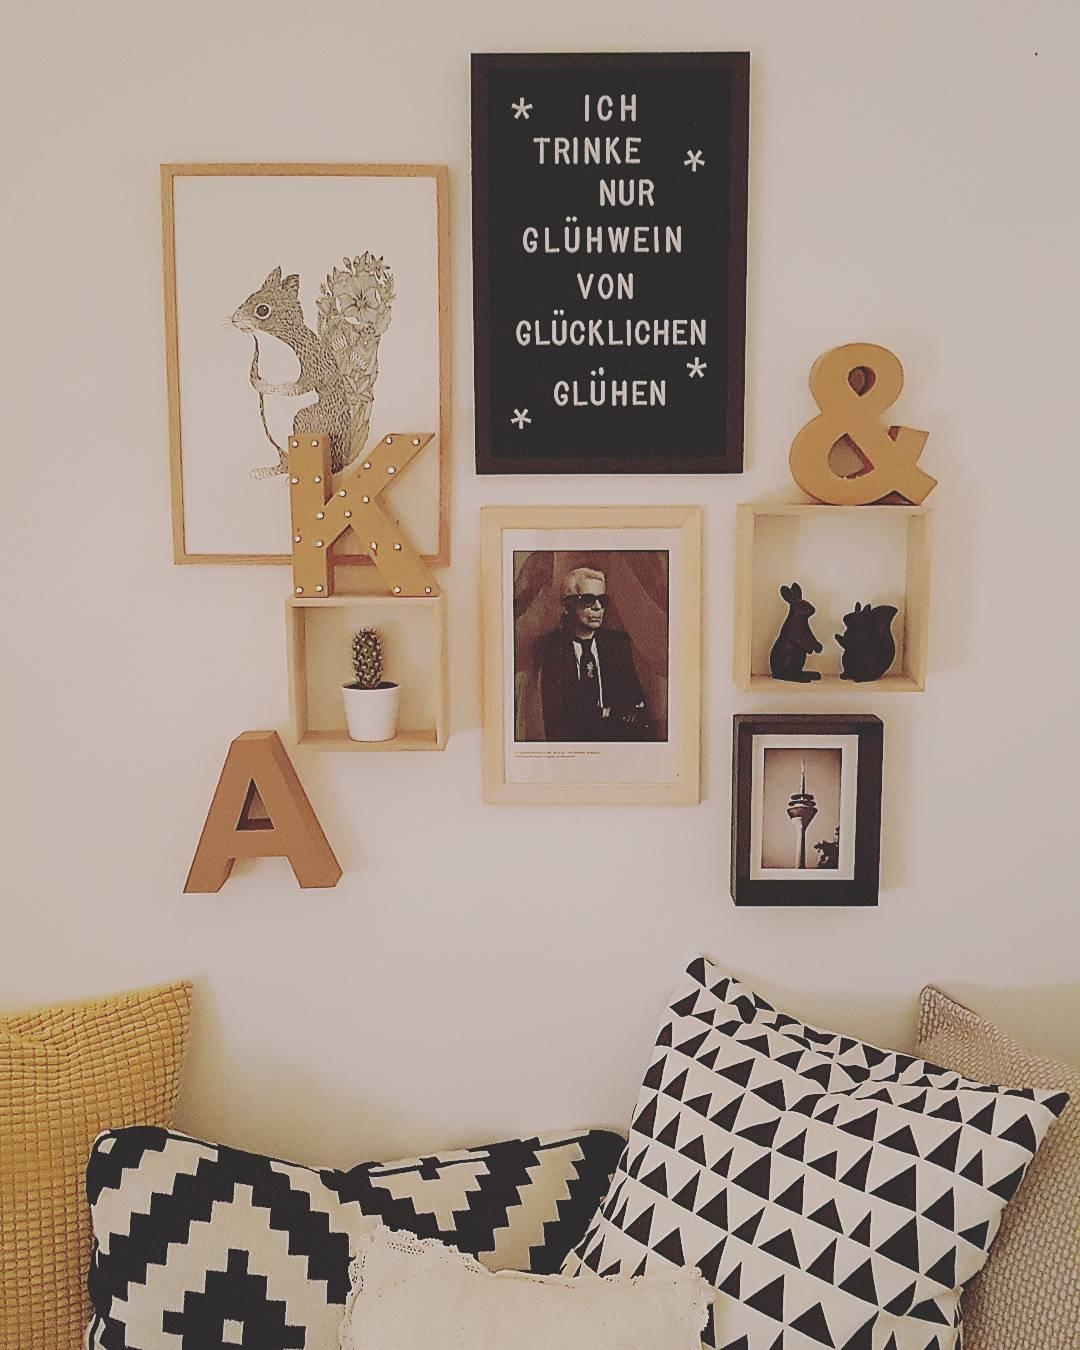 Die Kombi aus schwarz, weiß, grau und gelb geht immer! 
#livingroom#scandistyle#blackandwhite